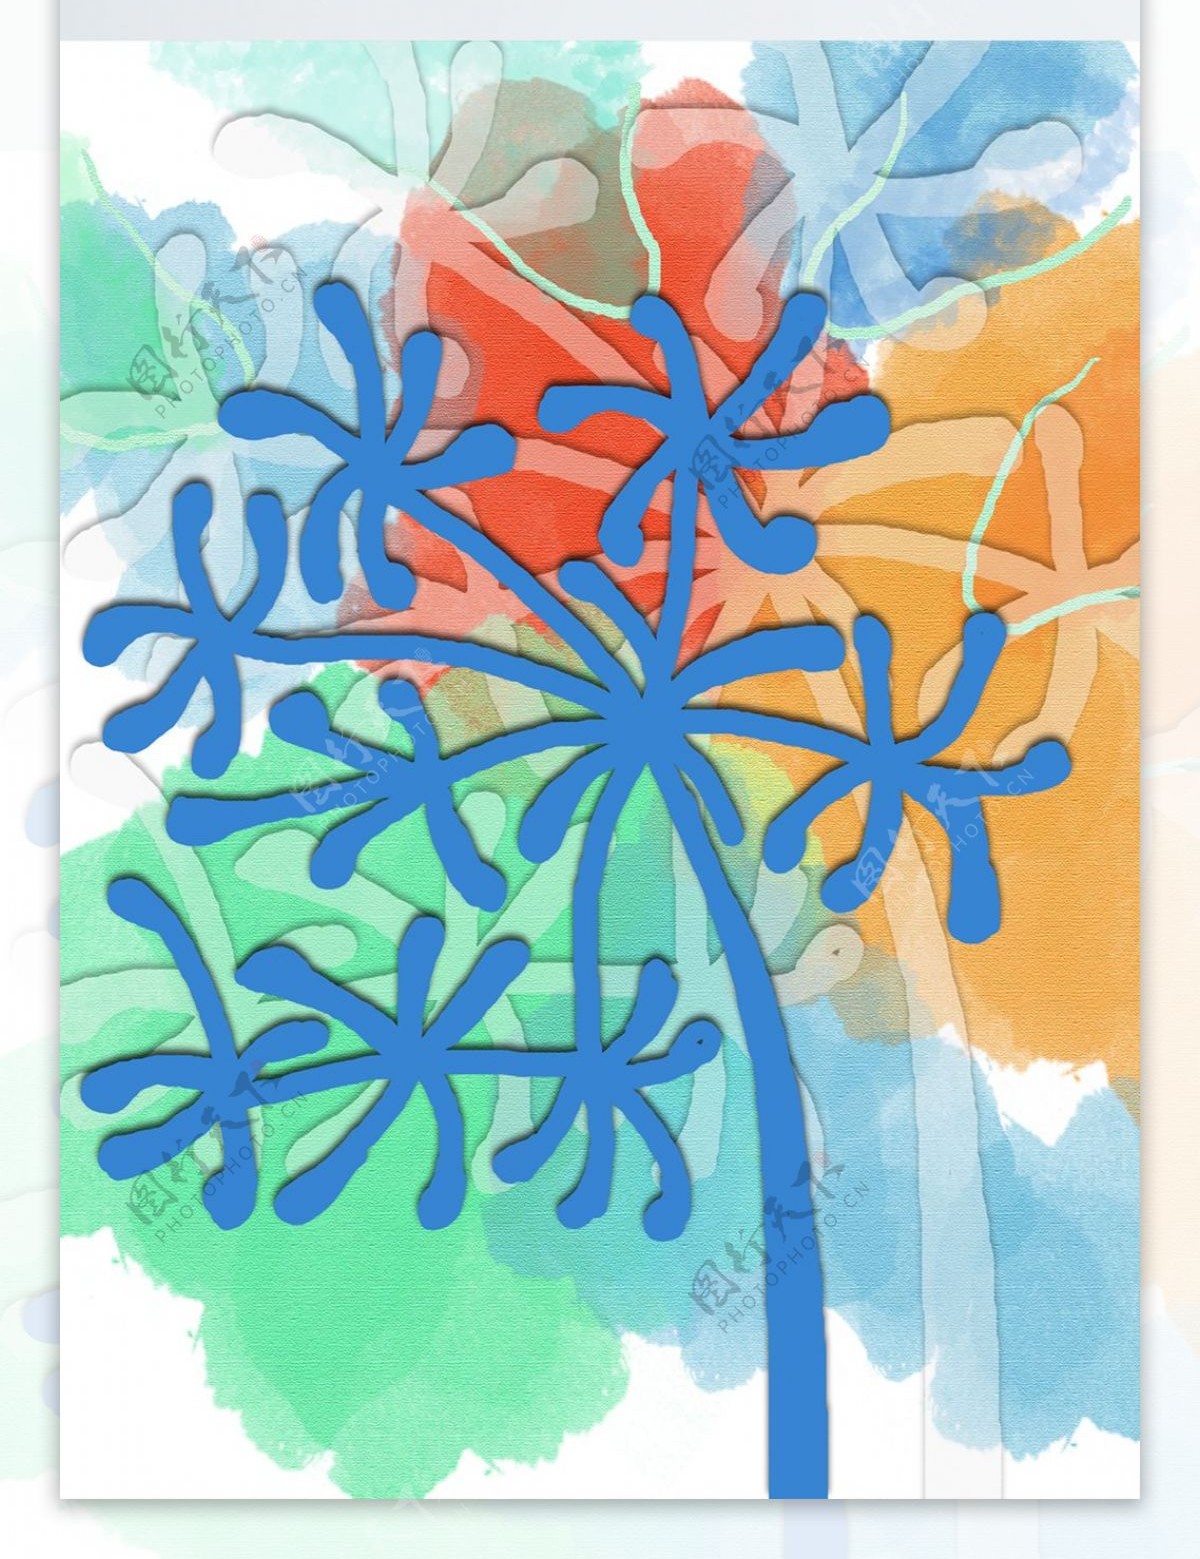 简约手绘蓝色雪花树客厅装饰画